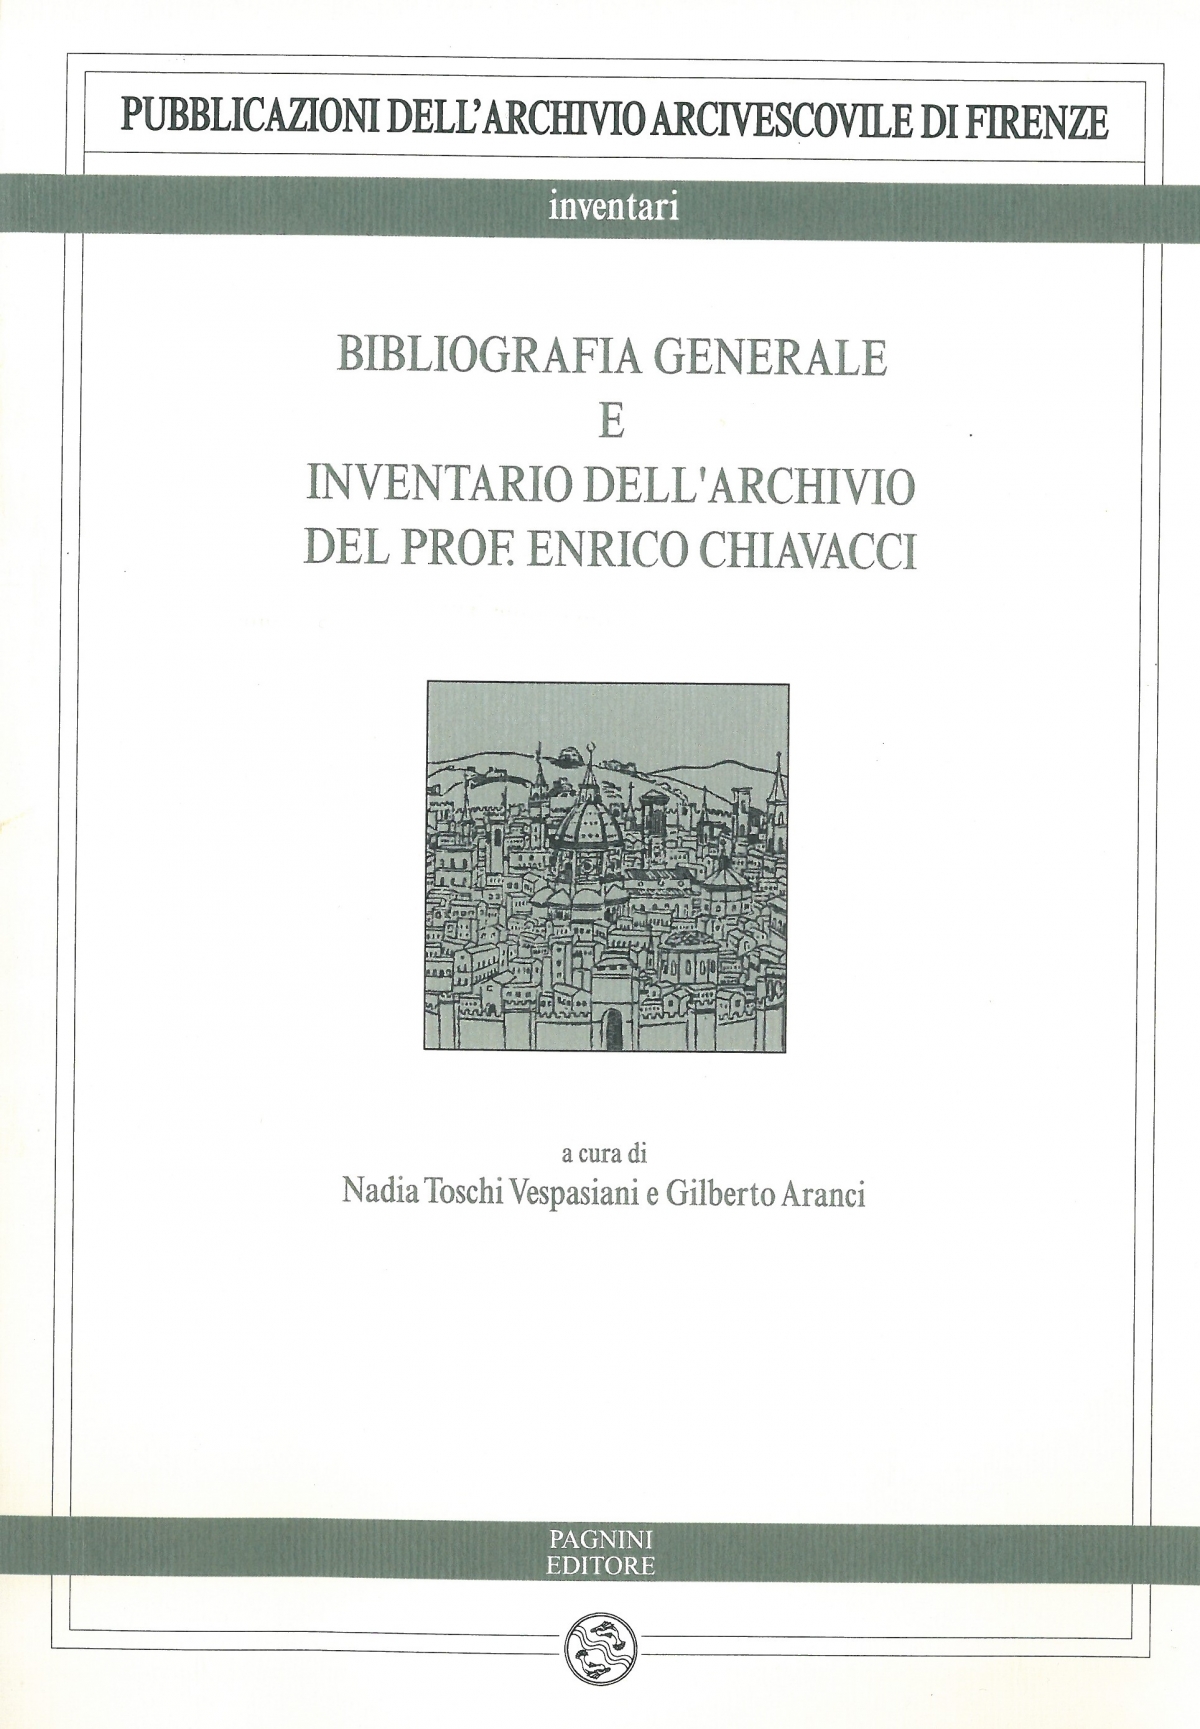 Bibliografia generale e inventario dell’archivio del prof. Enrico Chiavacci